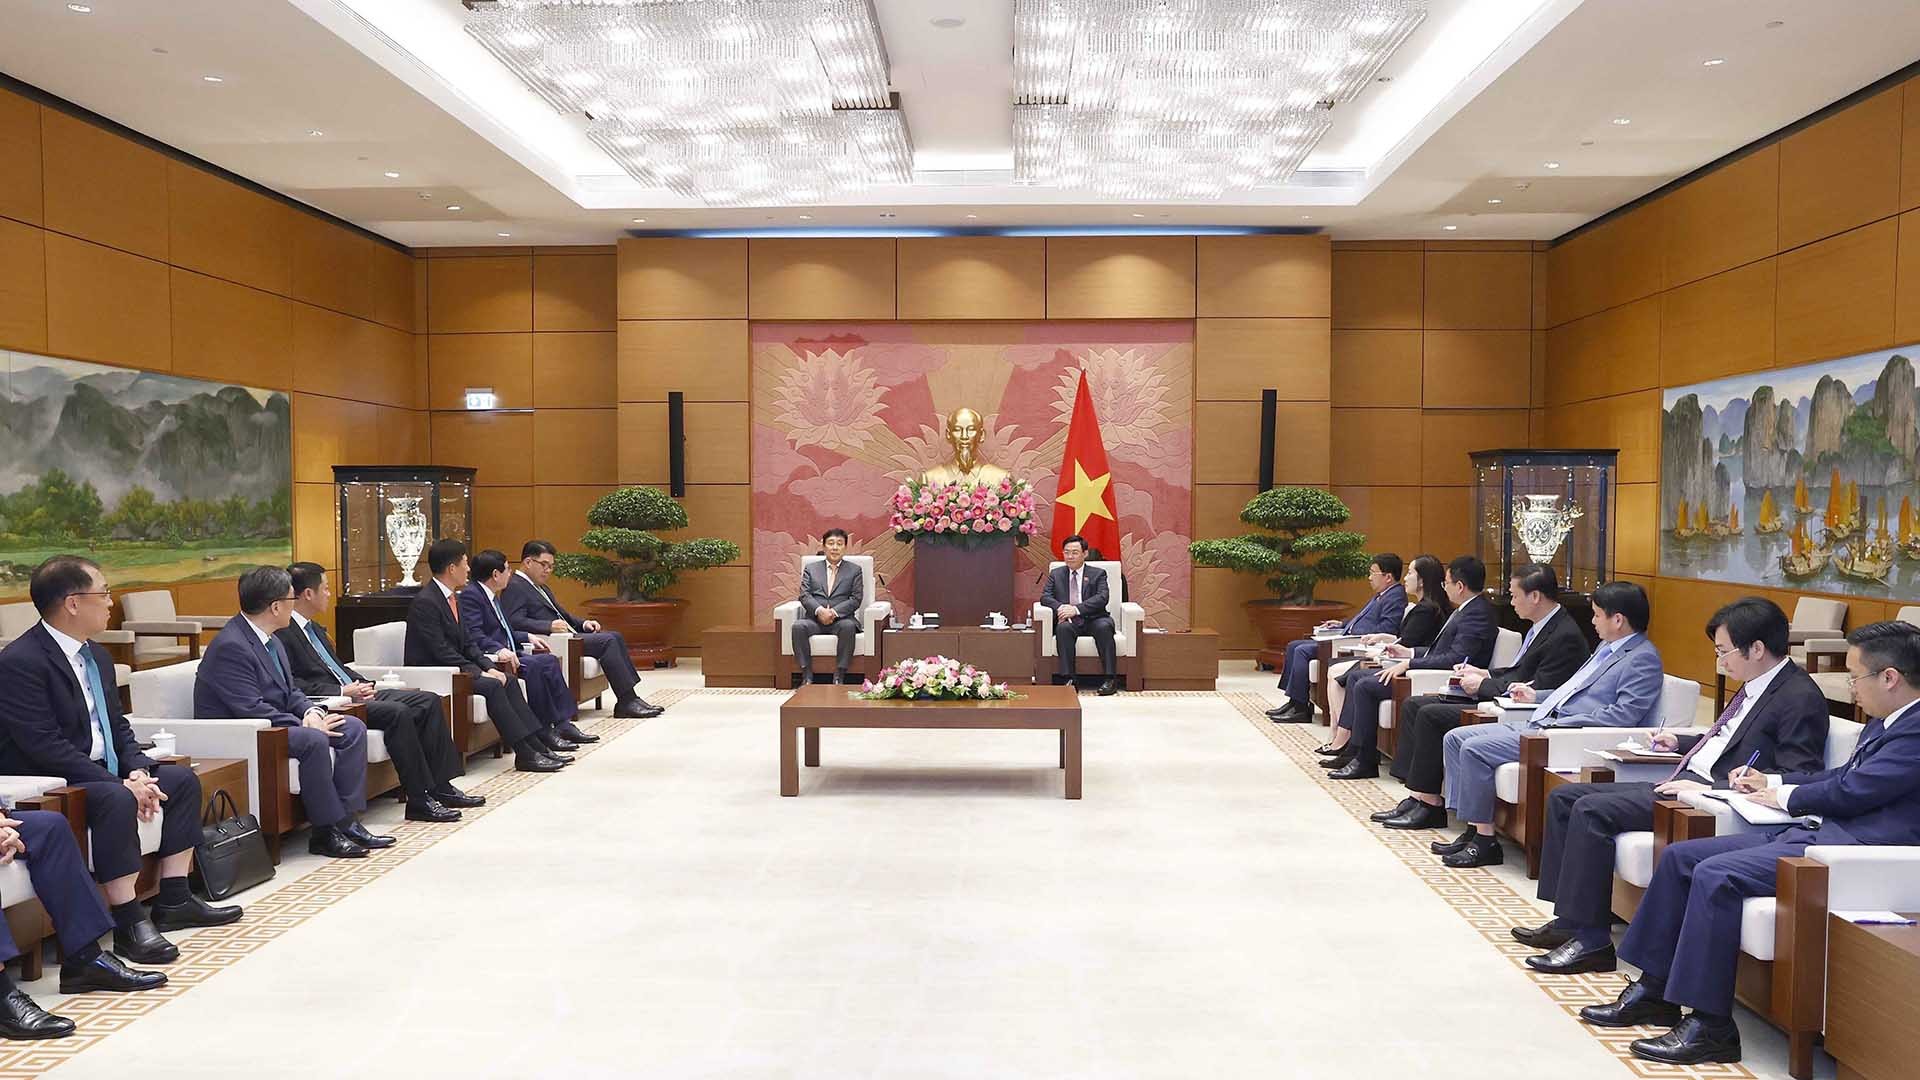 Chủ tịch Quốc hội Vương Đình Huệ tiếp ông Kim Jung Tai, Chủ tịch Ủy ban Chiến lược toàn cầu, Tập đoàn Tài chính Hana (Hàn Quốc).